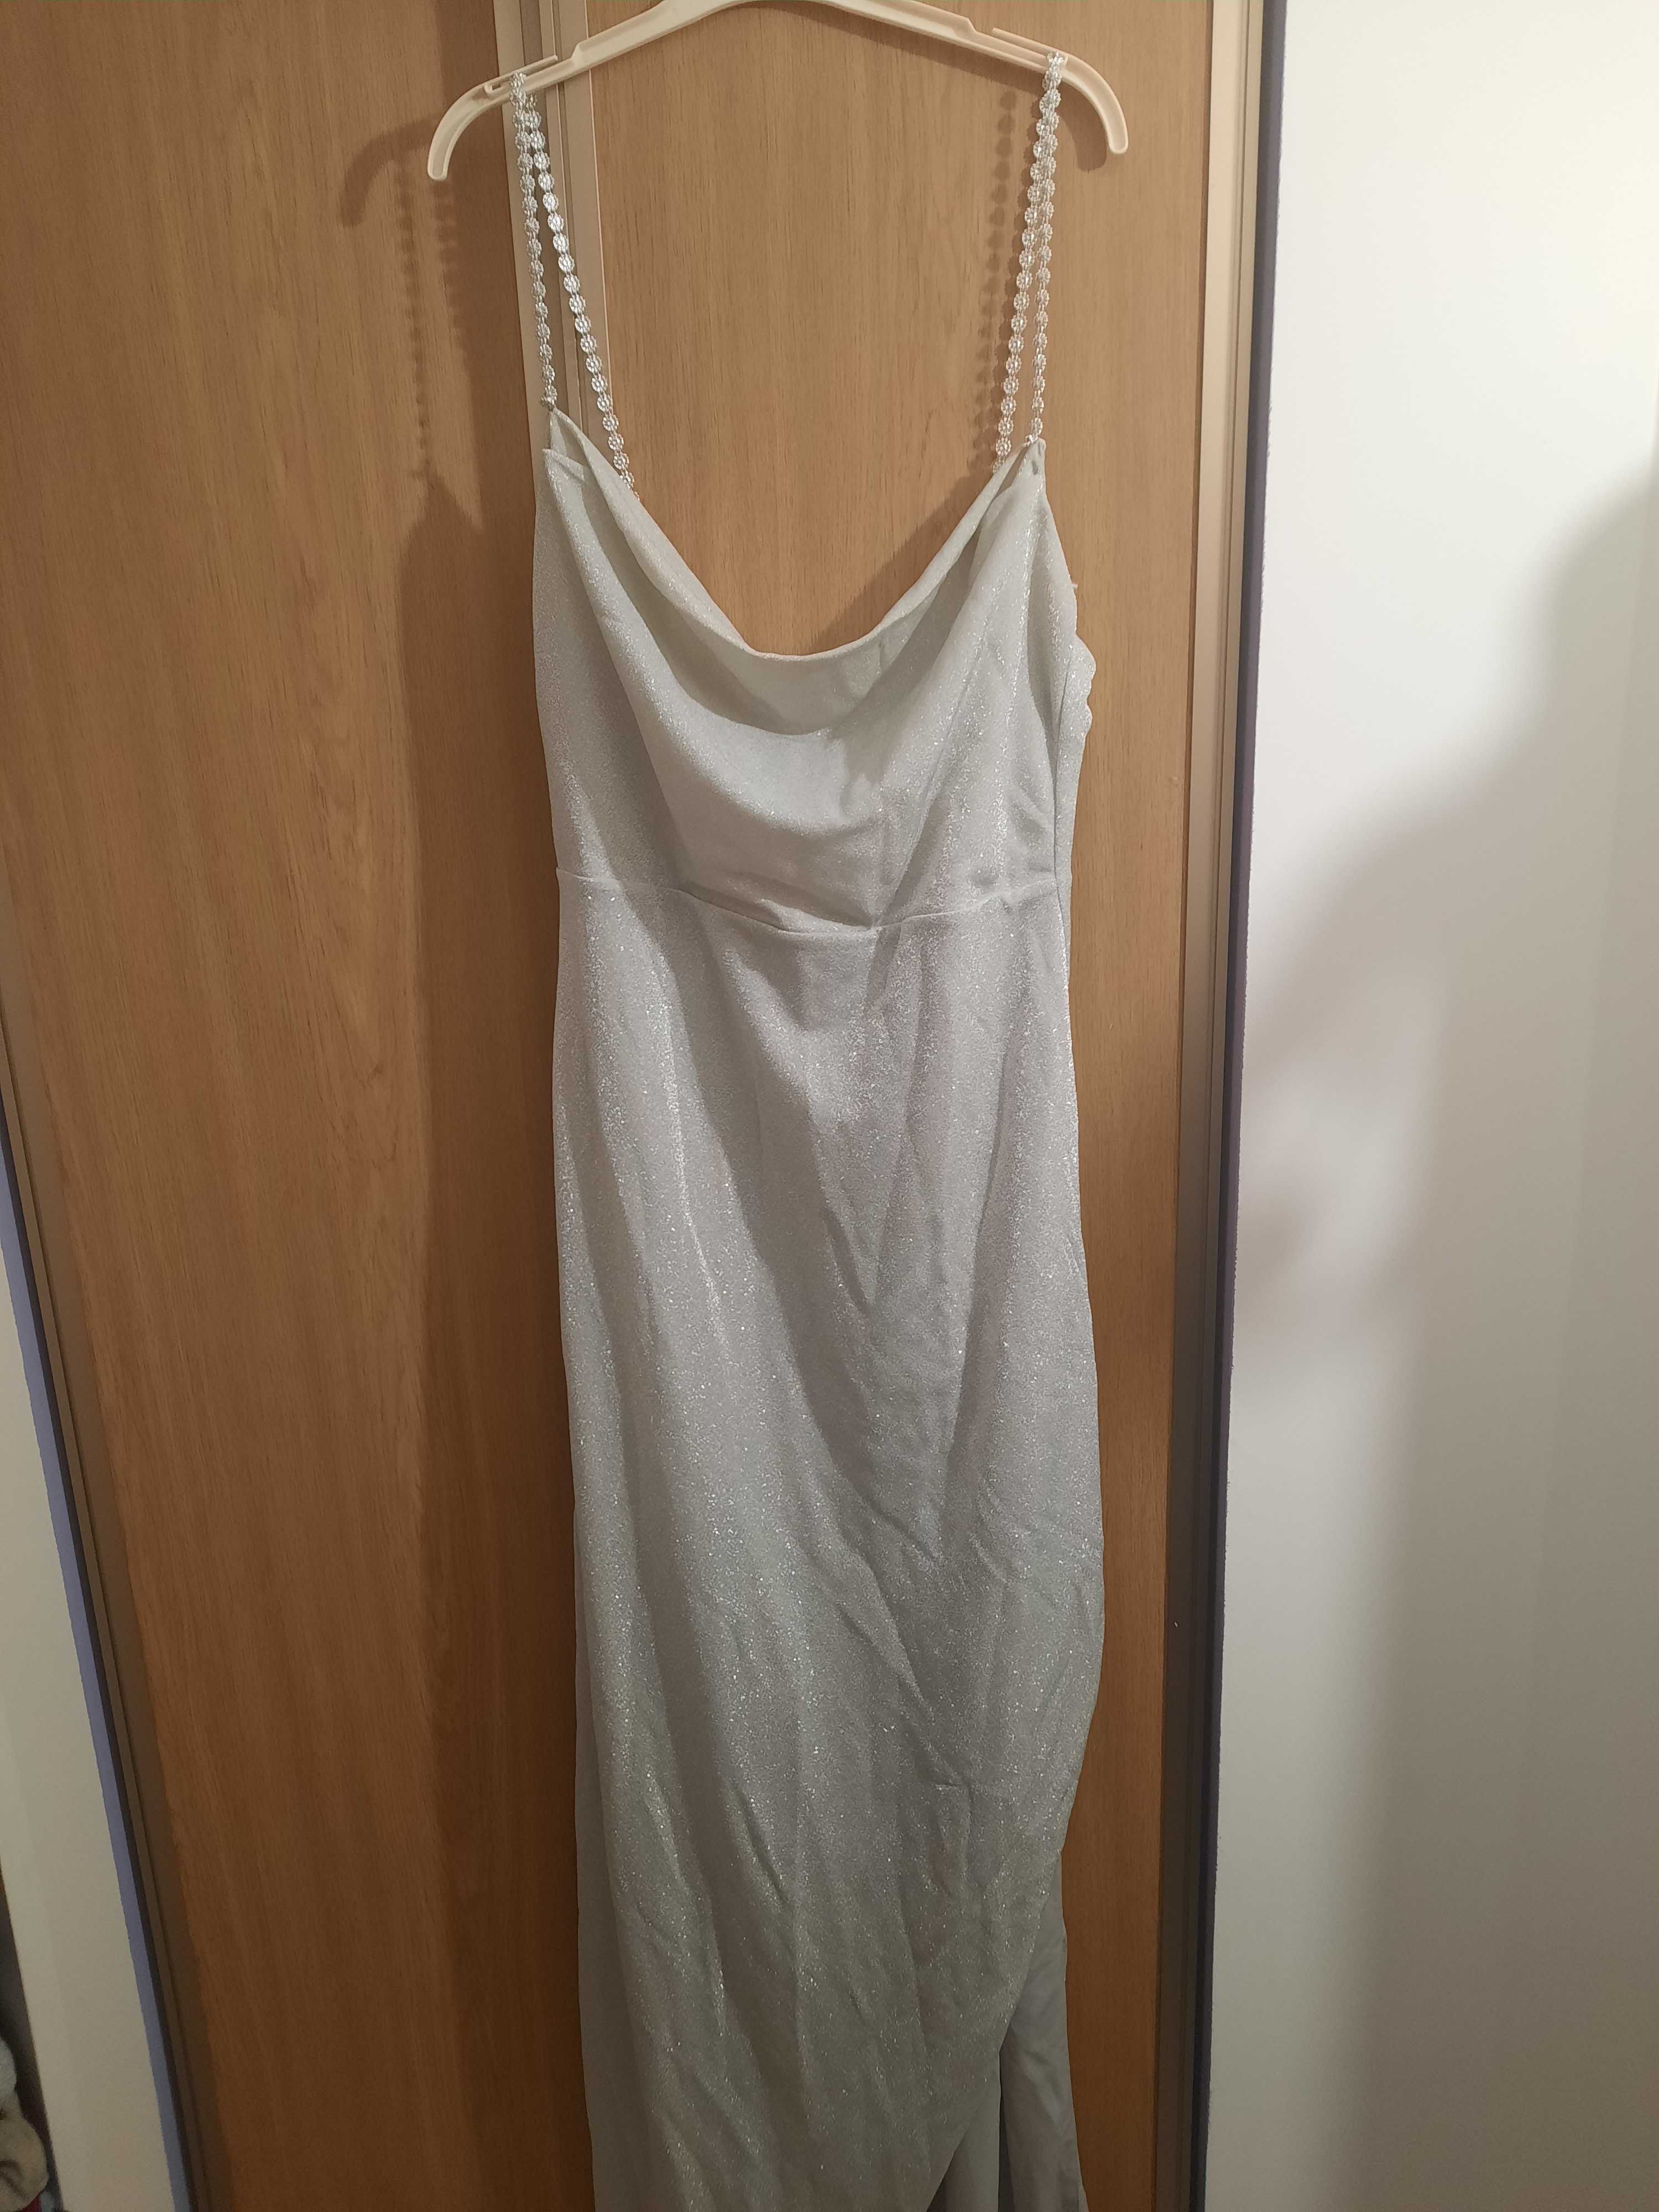 Srebrna blyszczaca sukienka dluga maxi rozmiar 40-44